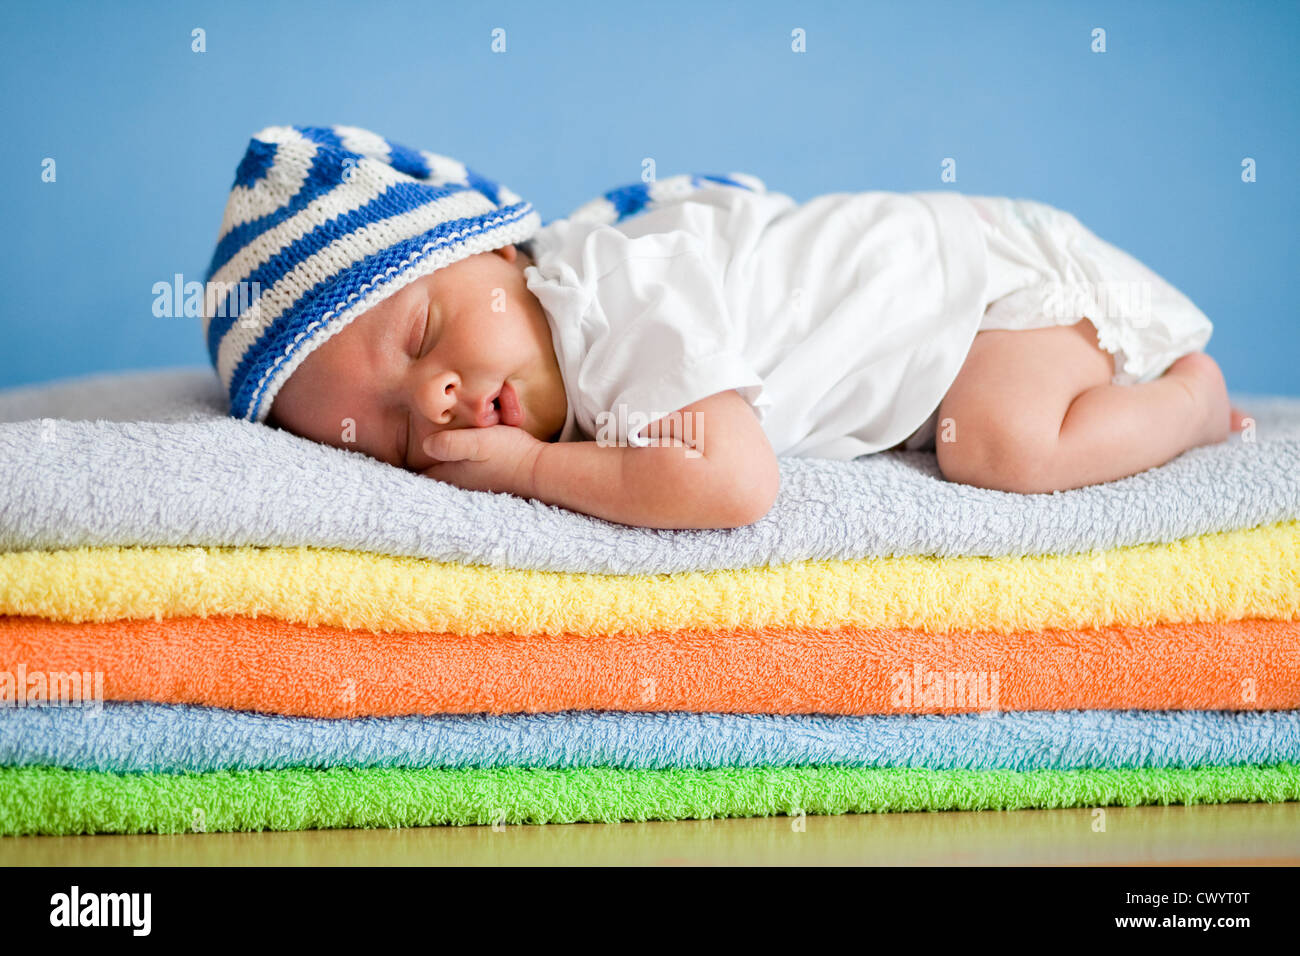 Dormir bébé nouveau-né sur la pile de serviettes colorées Banque D'Images